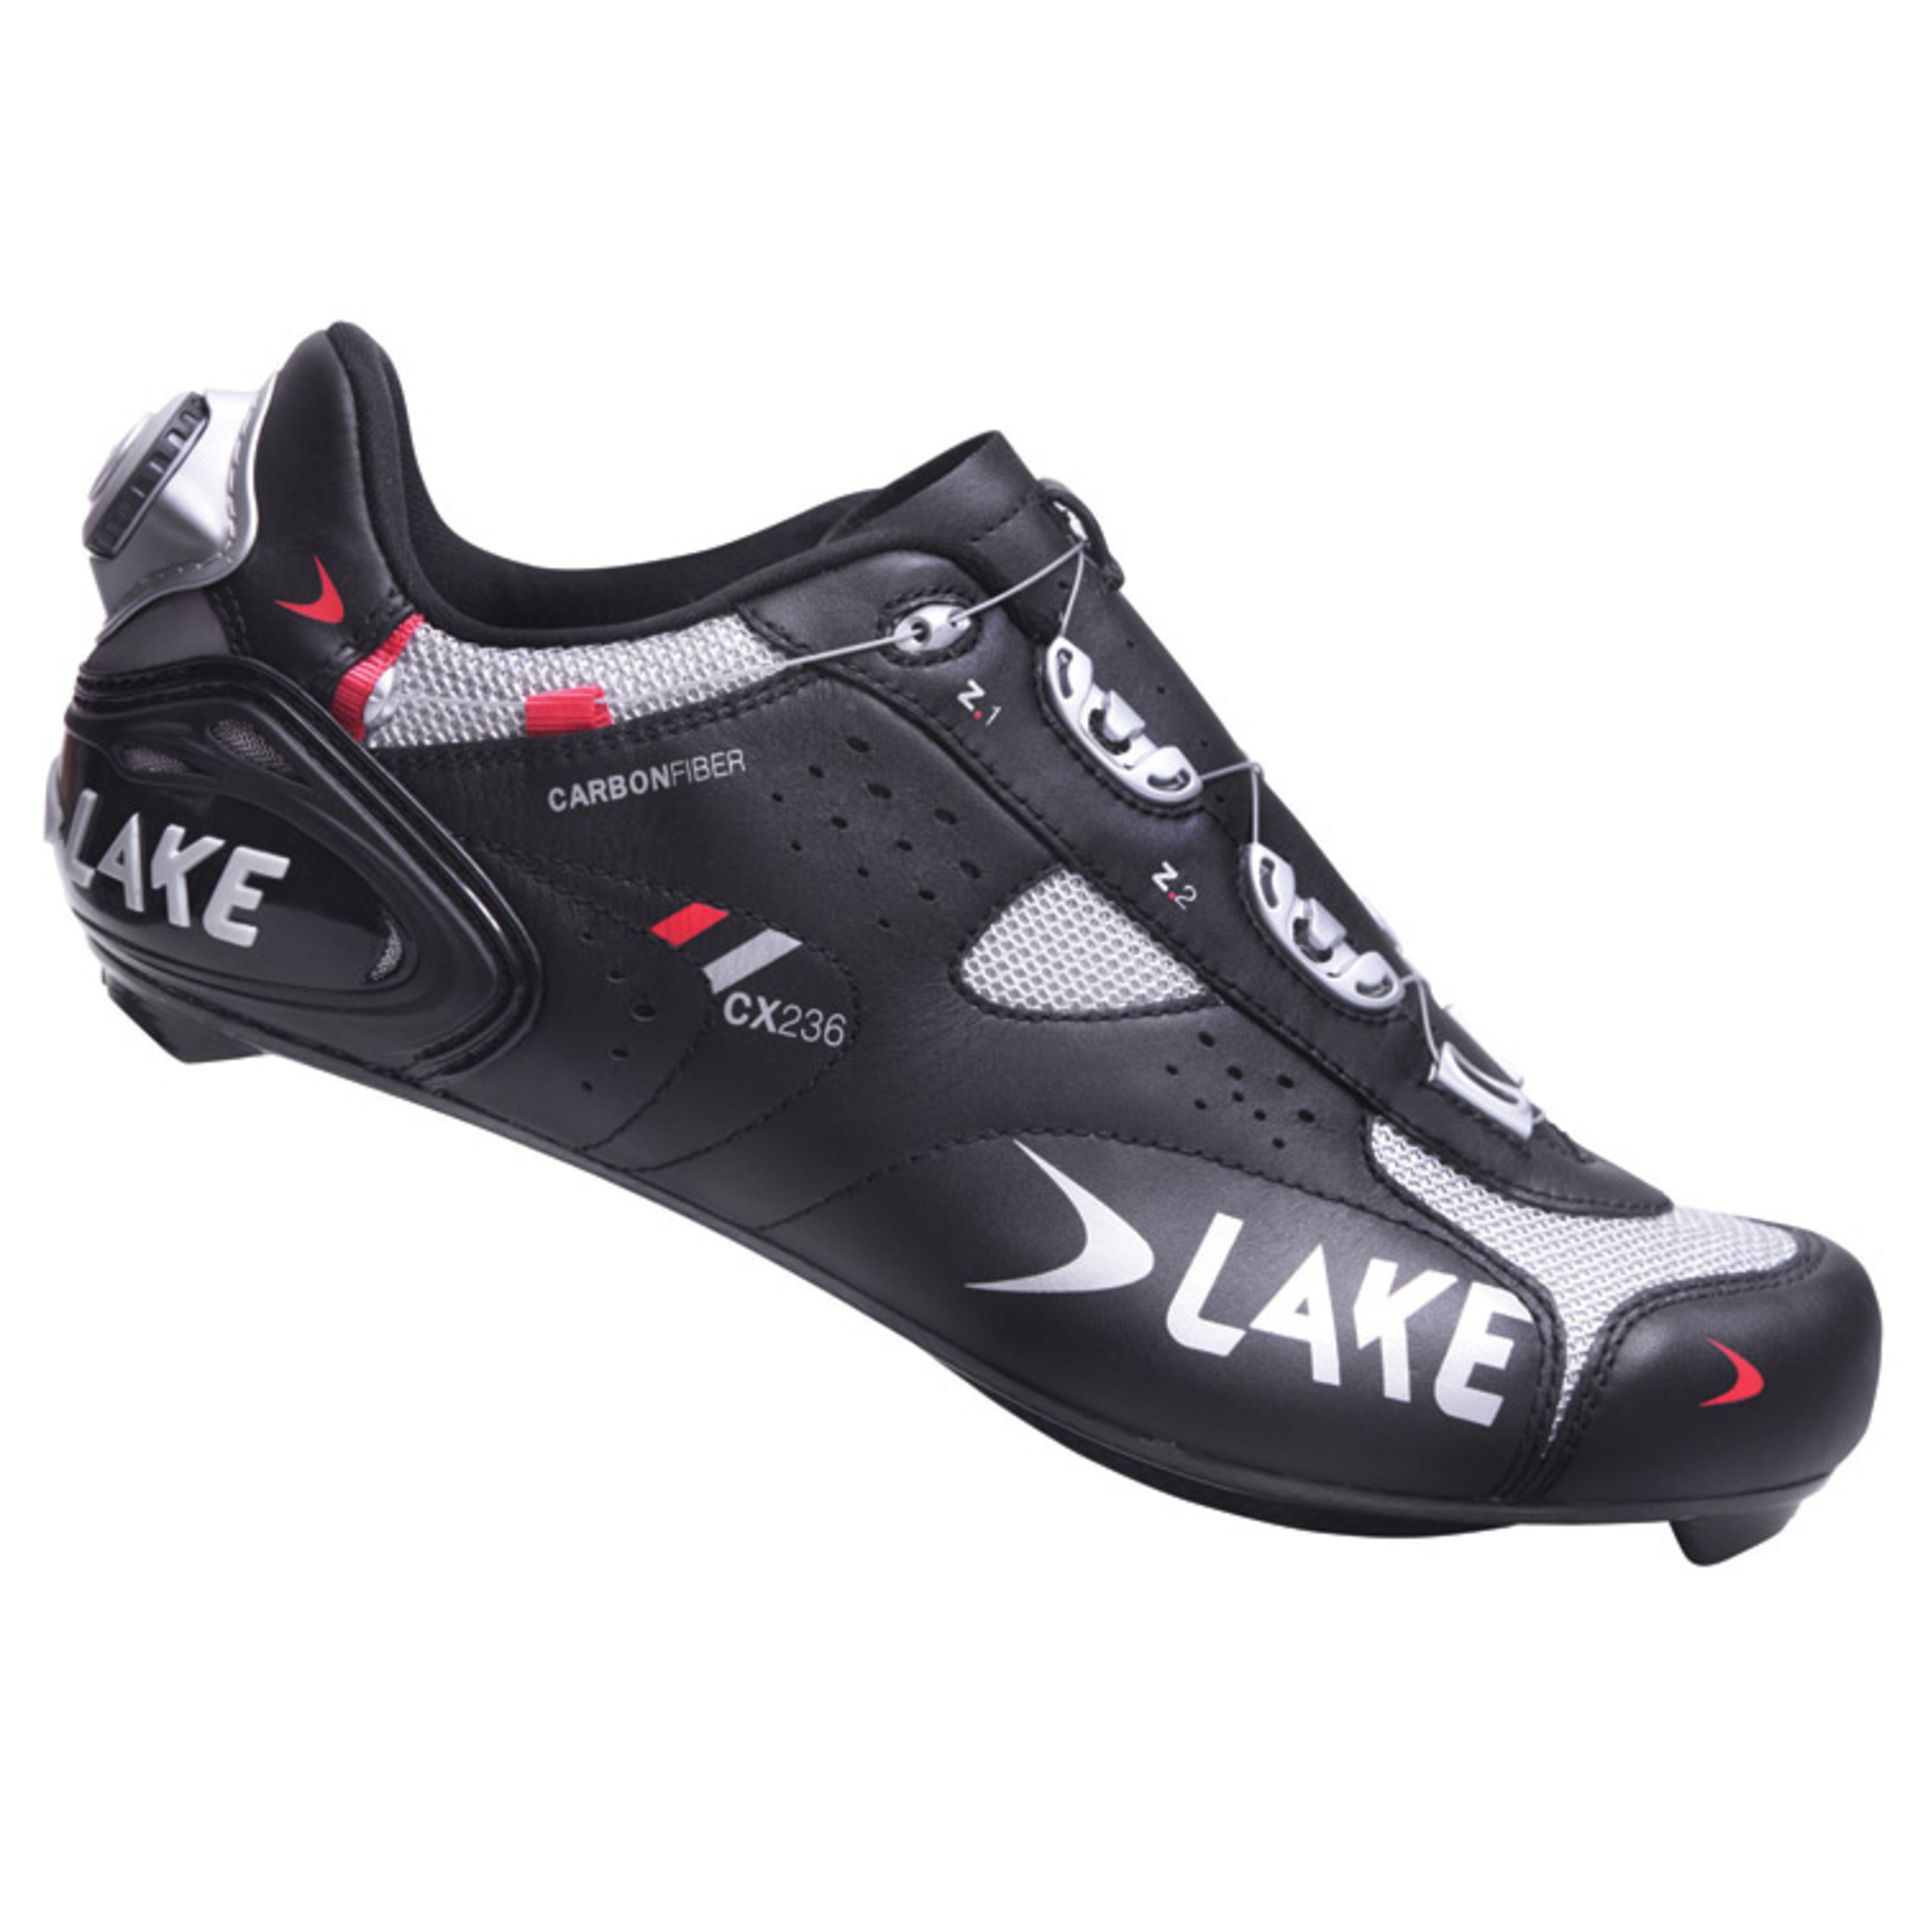 Lake CX236 Black Road Cycling Shoes, Size 48 – (3